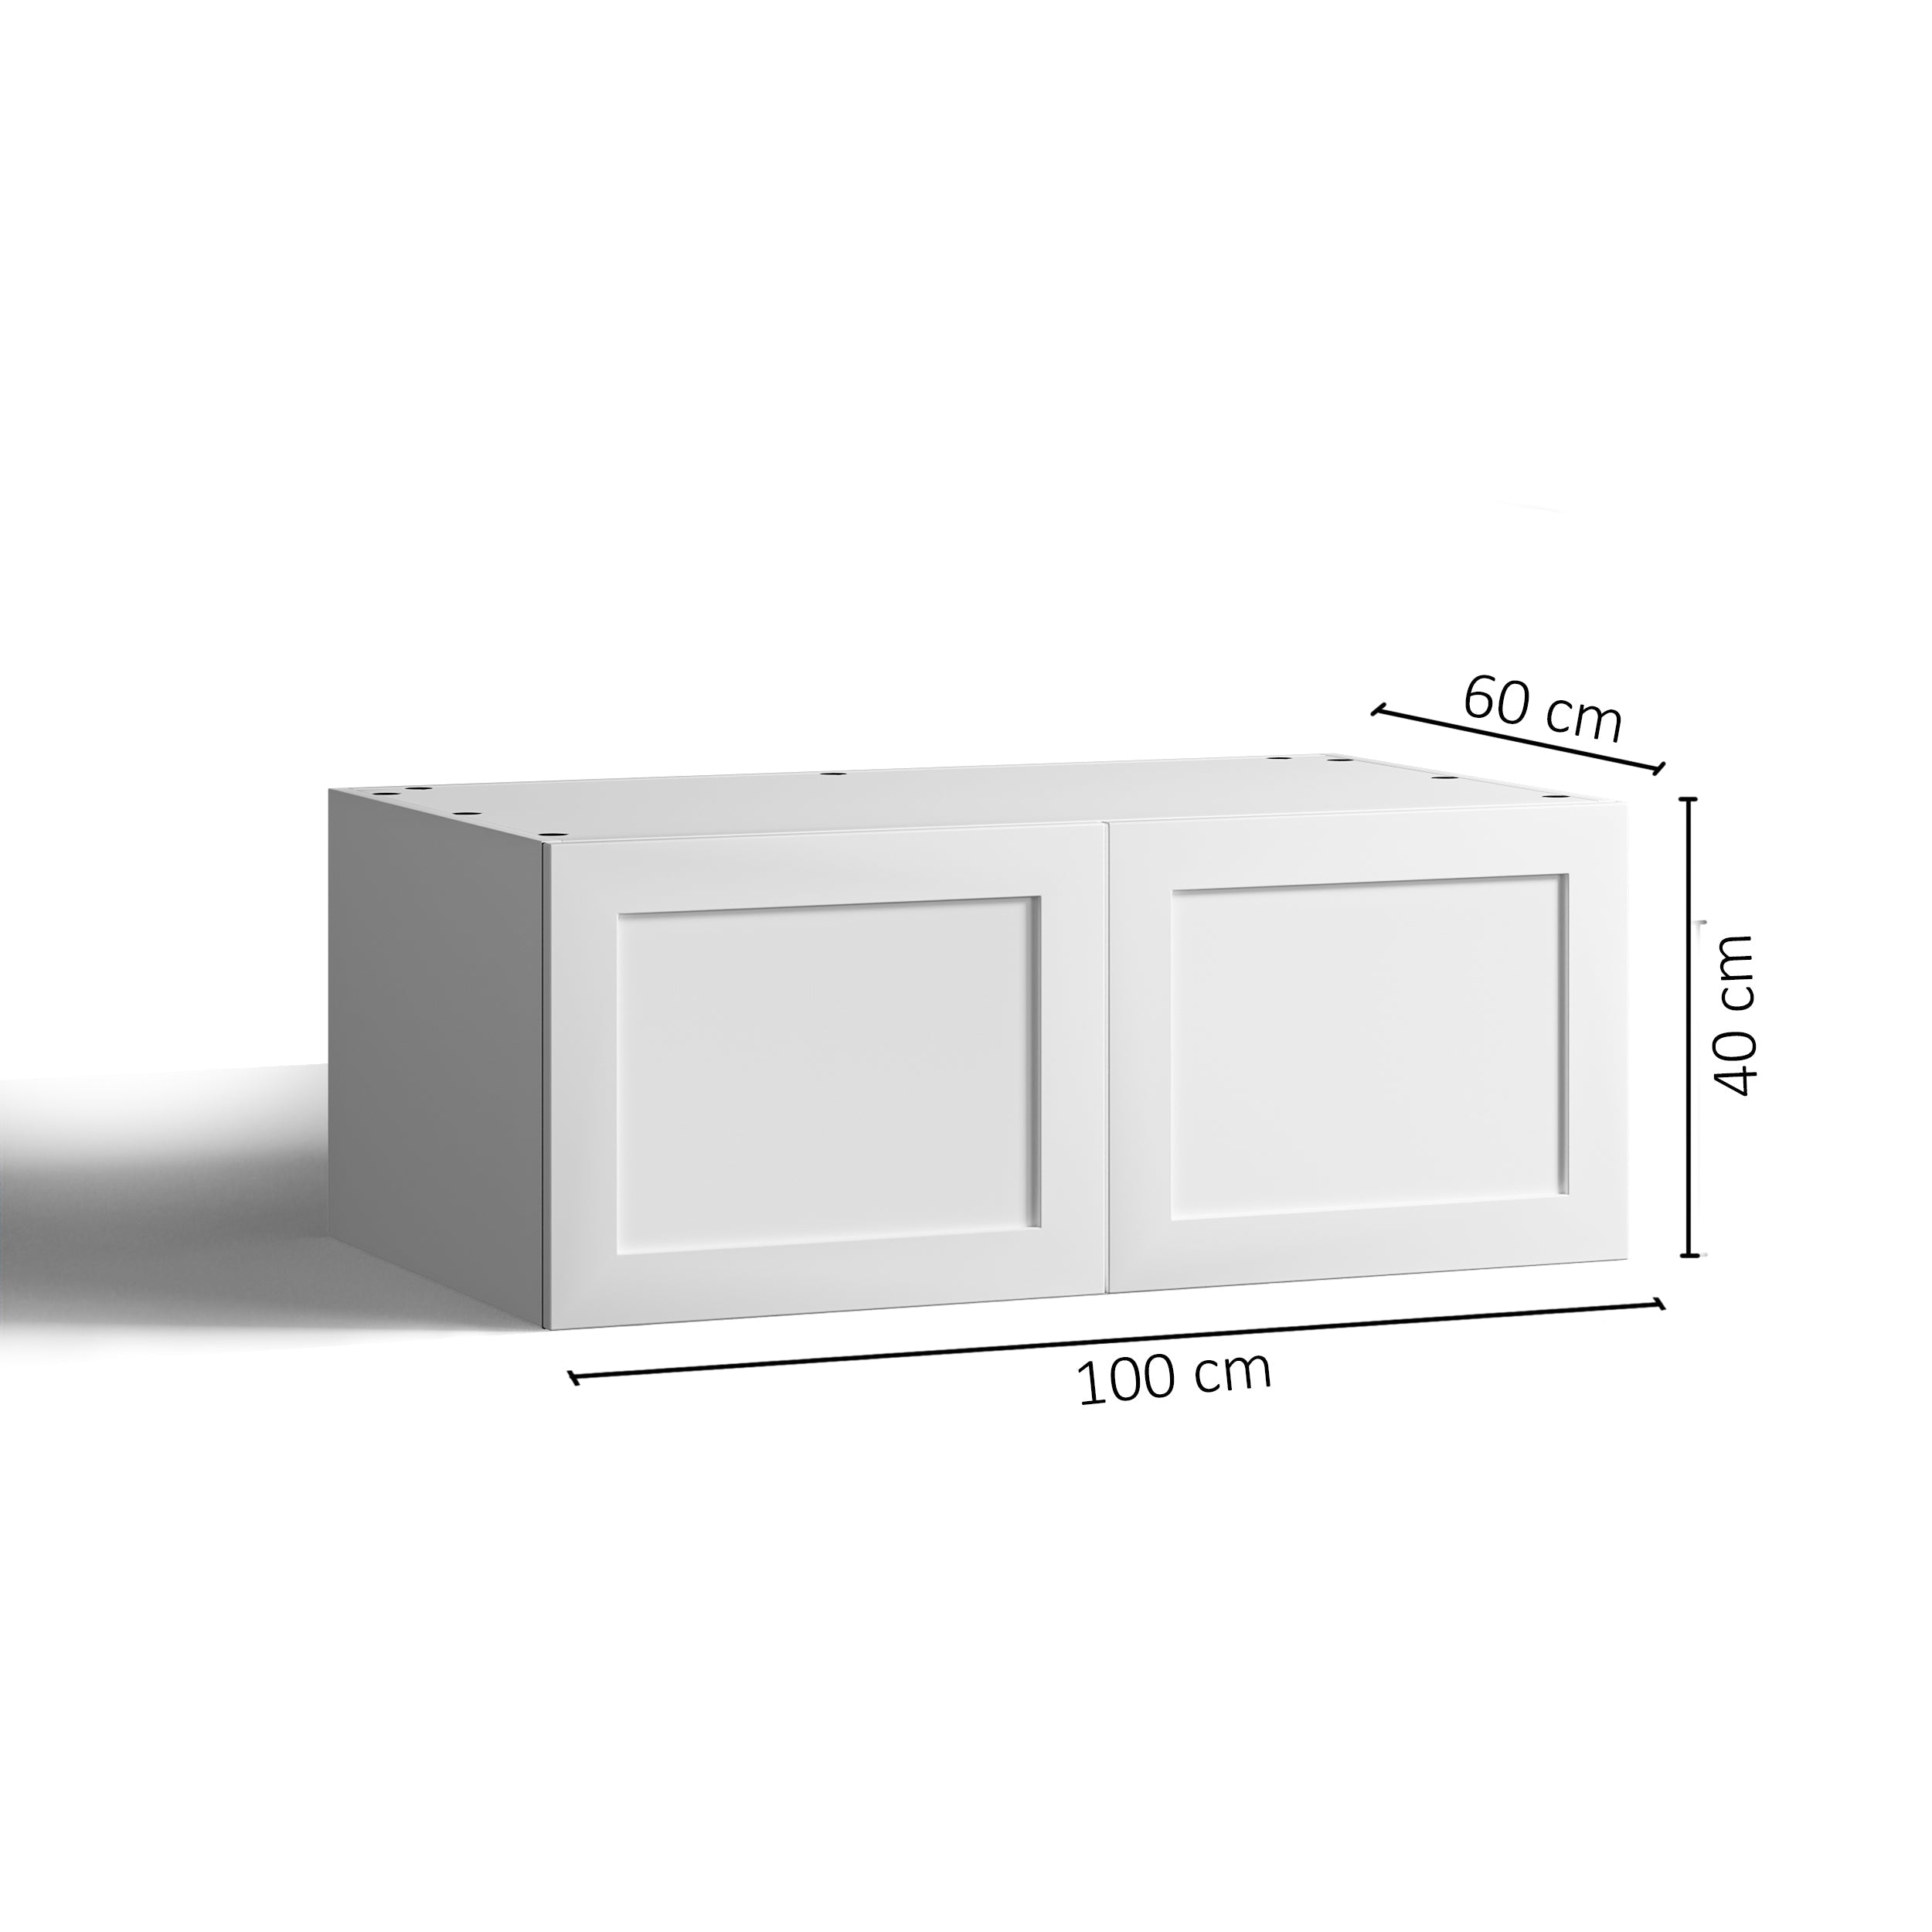 100x40 - Cabinet (58cm D) w 2 Doors - Timber Veneer - Shaker - PAX